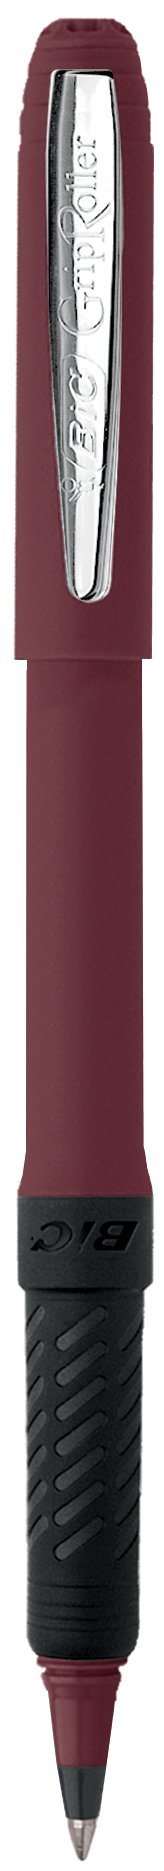 BIC® Grip Roller Pen Burgundy Single Color 